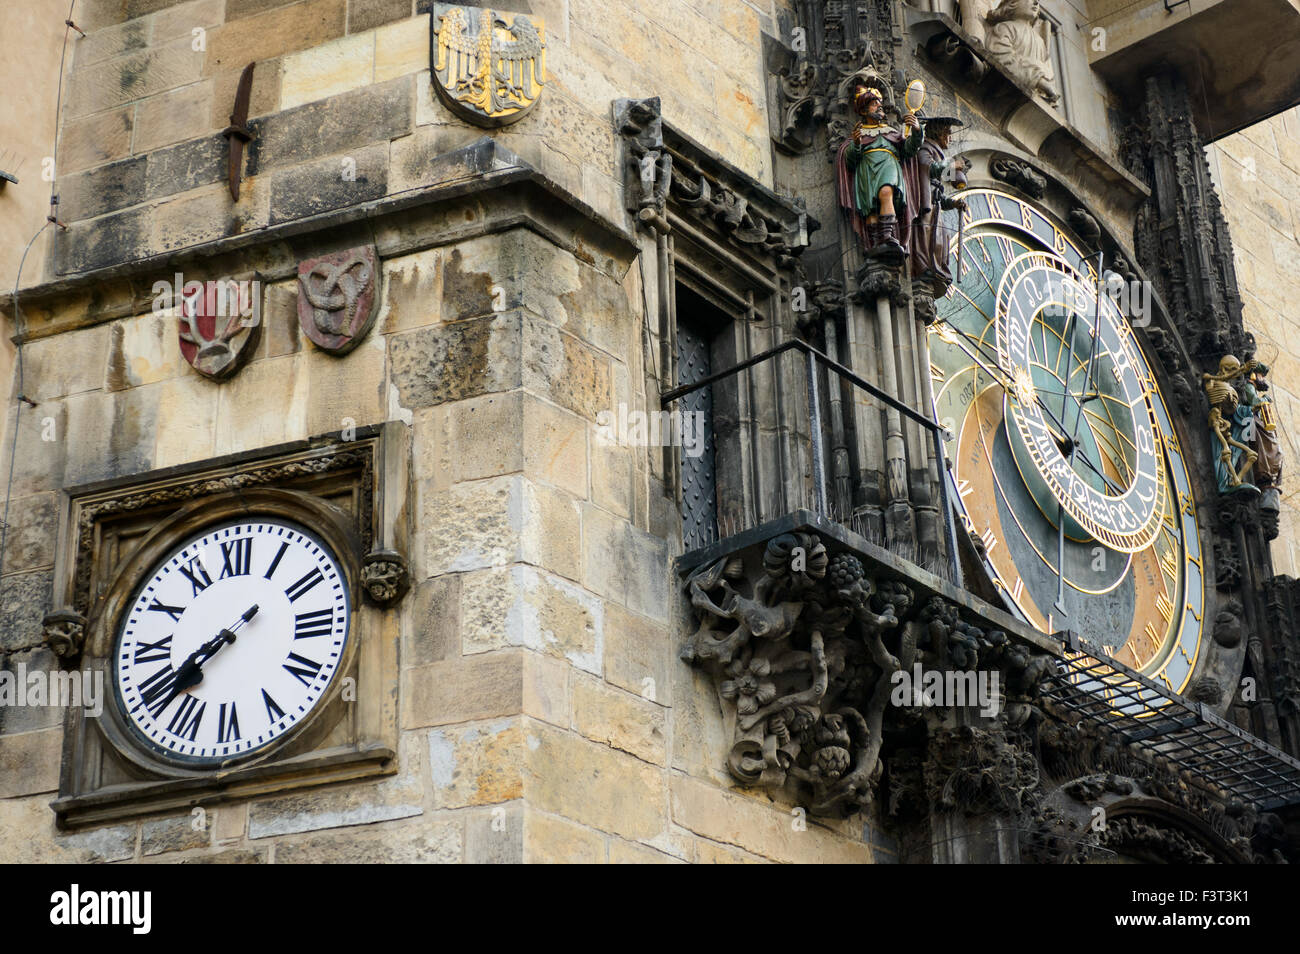 Die astronomische Uhr am Altstädter Rathaus, Altstädter Ring, Prag, Tschechische Republik Stockfoto